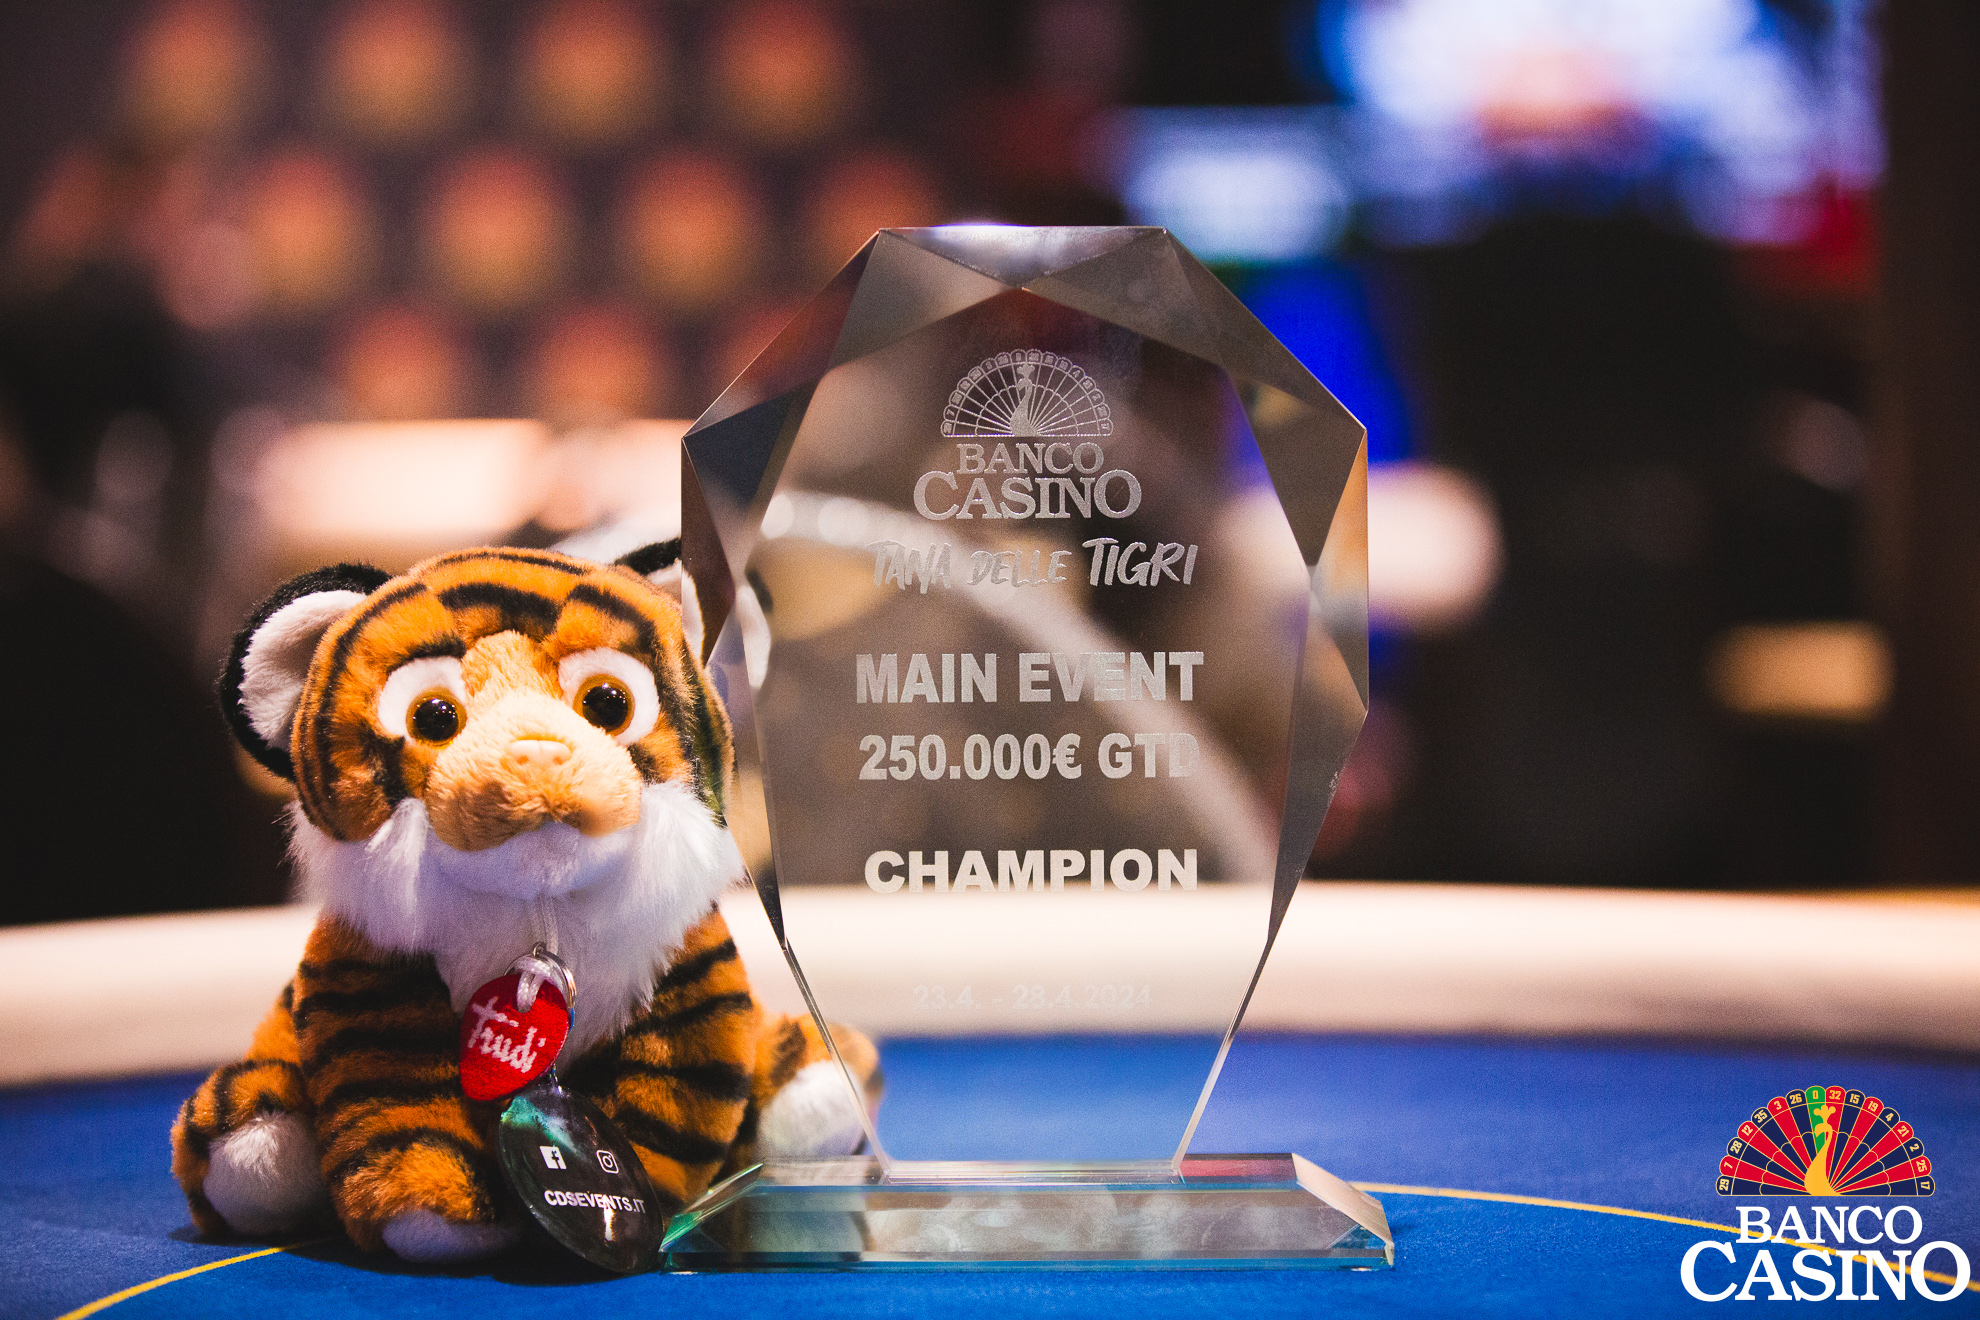 Hlavný turnaj Tana delle Tigri 250.000€ GTD odštartoval v Banco Casino úvodným dňom!